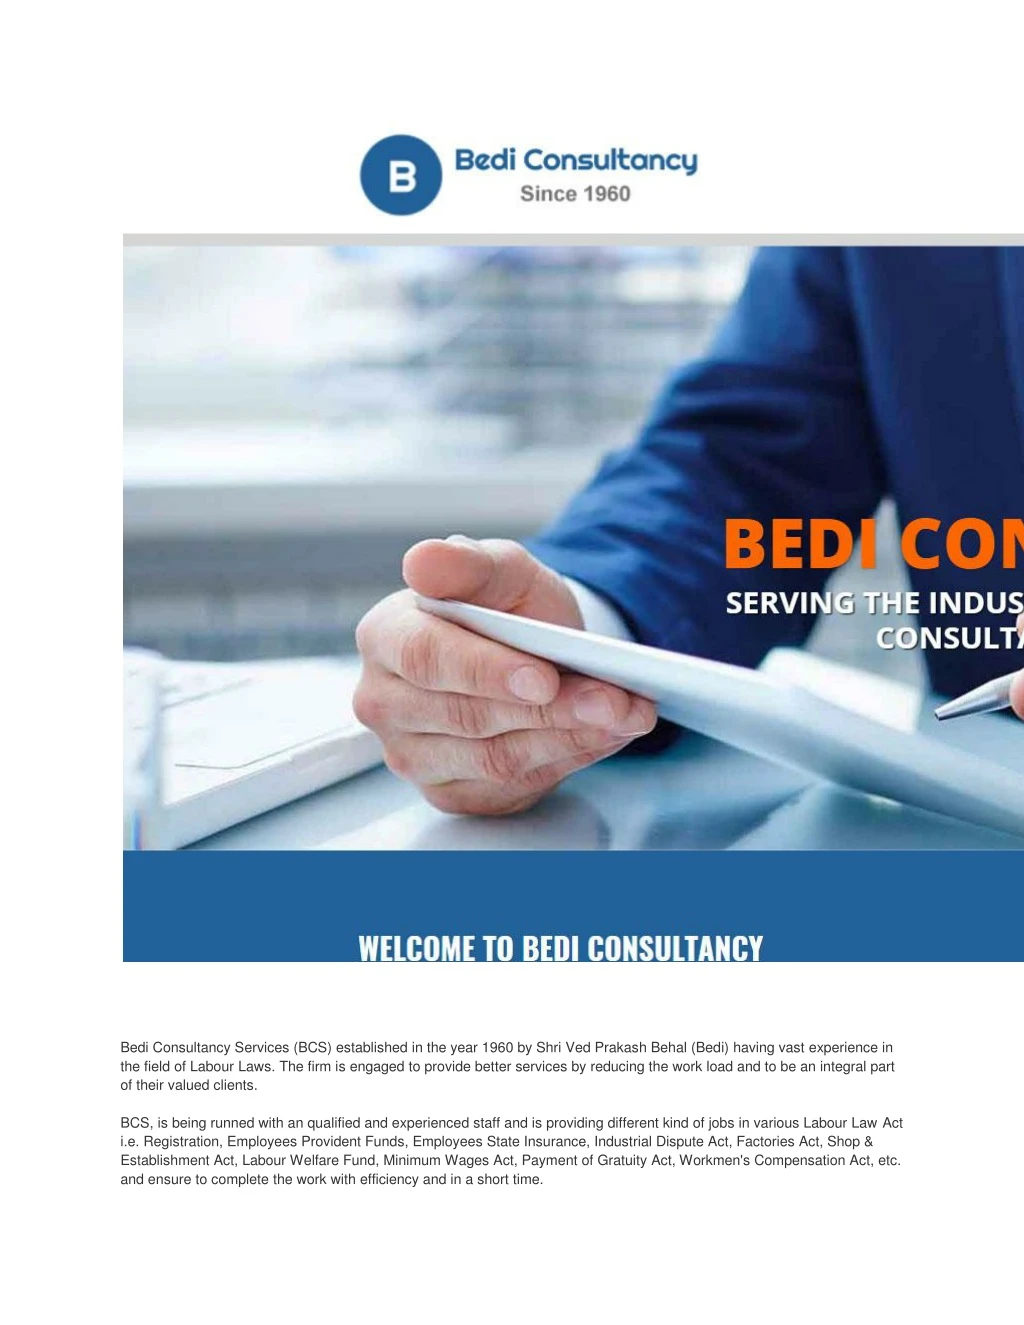 bedi consultancy services bcs established